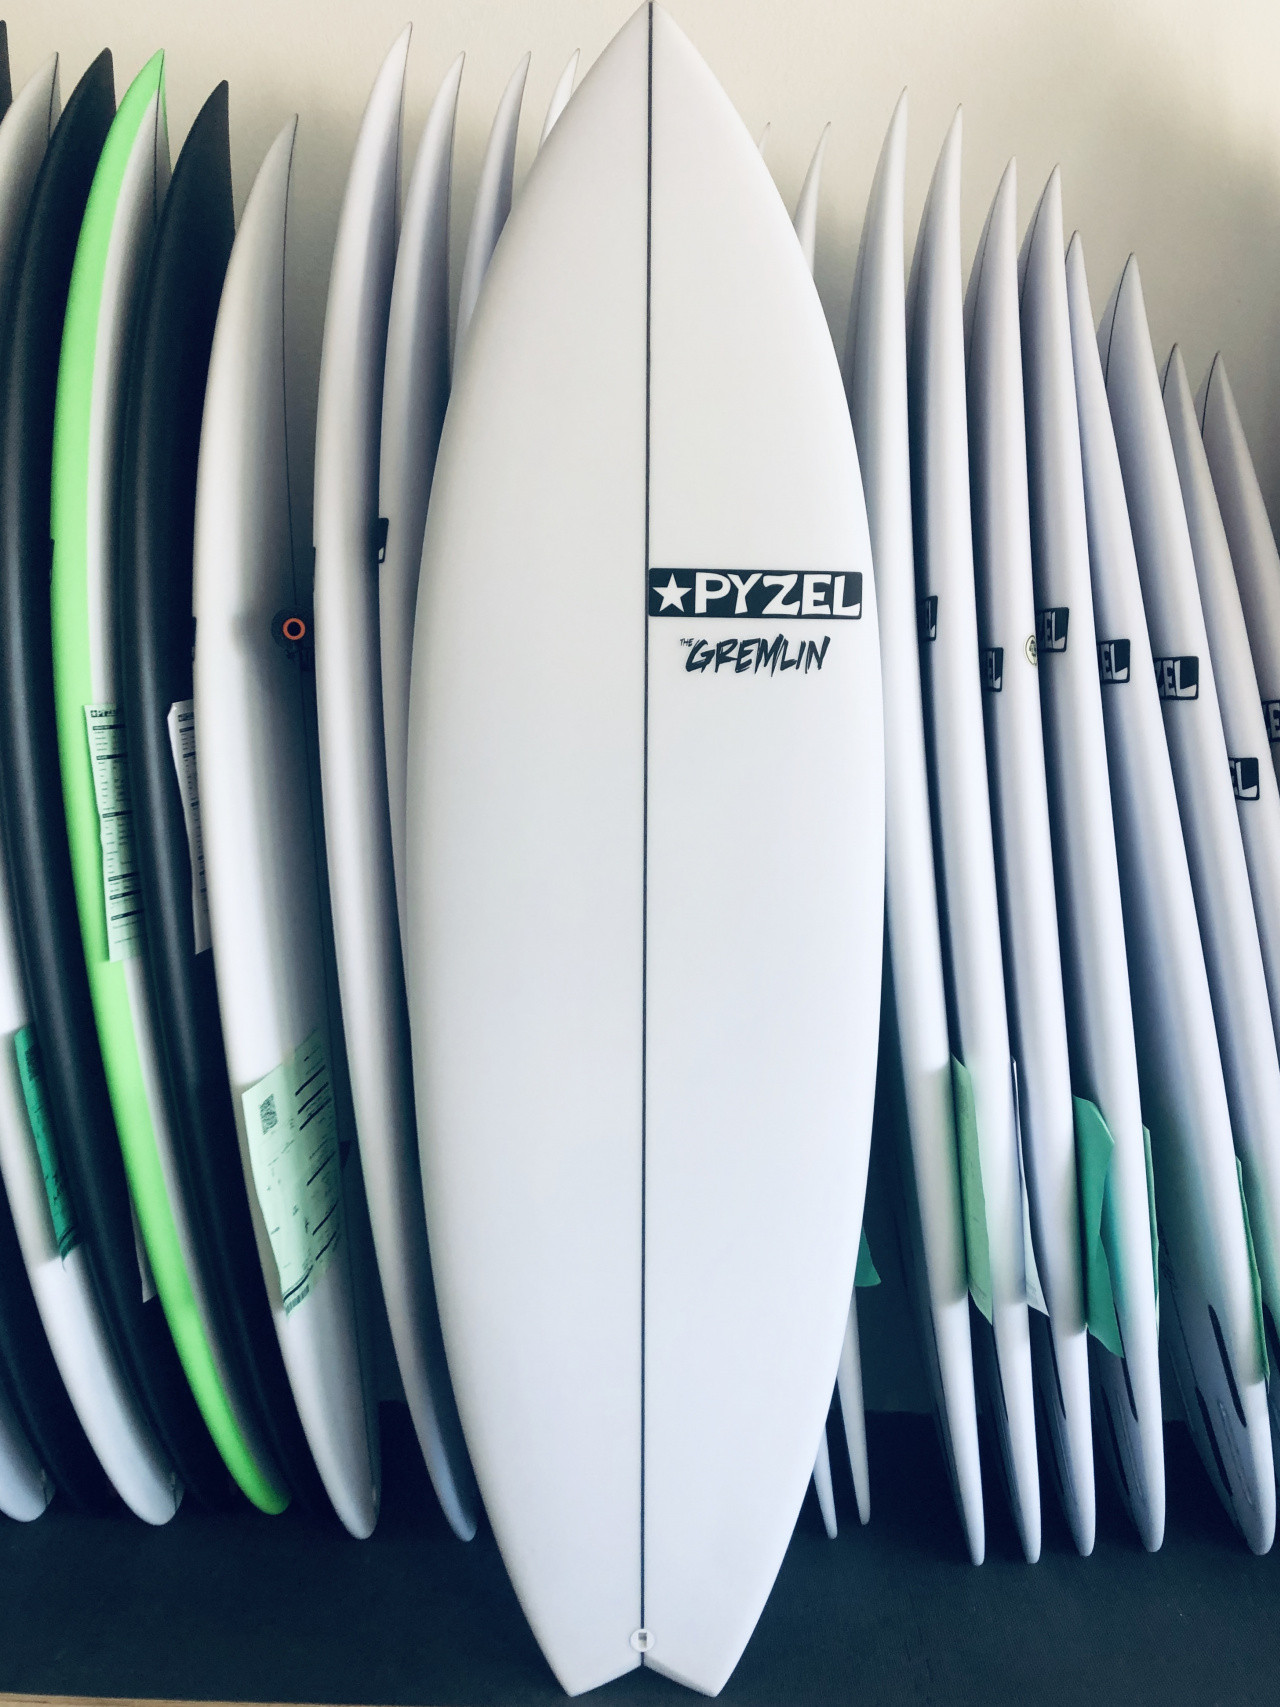 Pyzel Surfboards - Gremlin